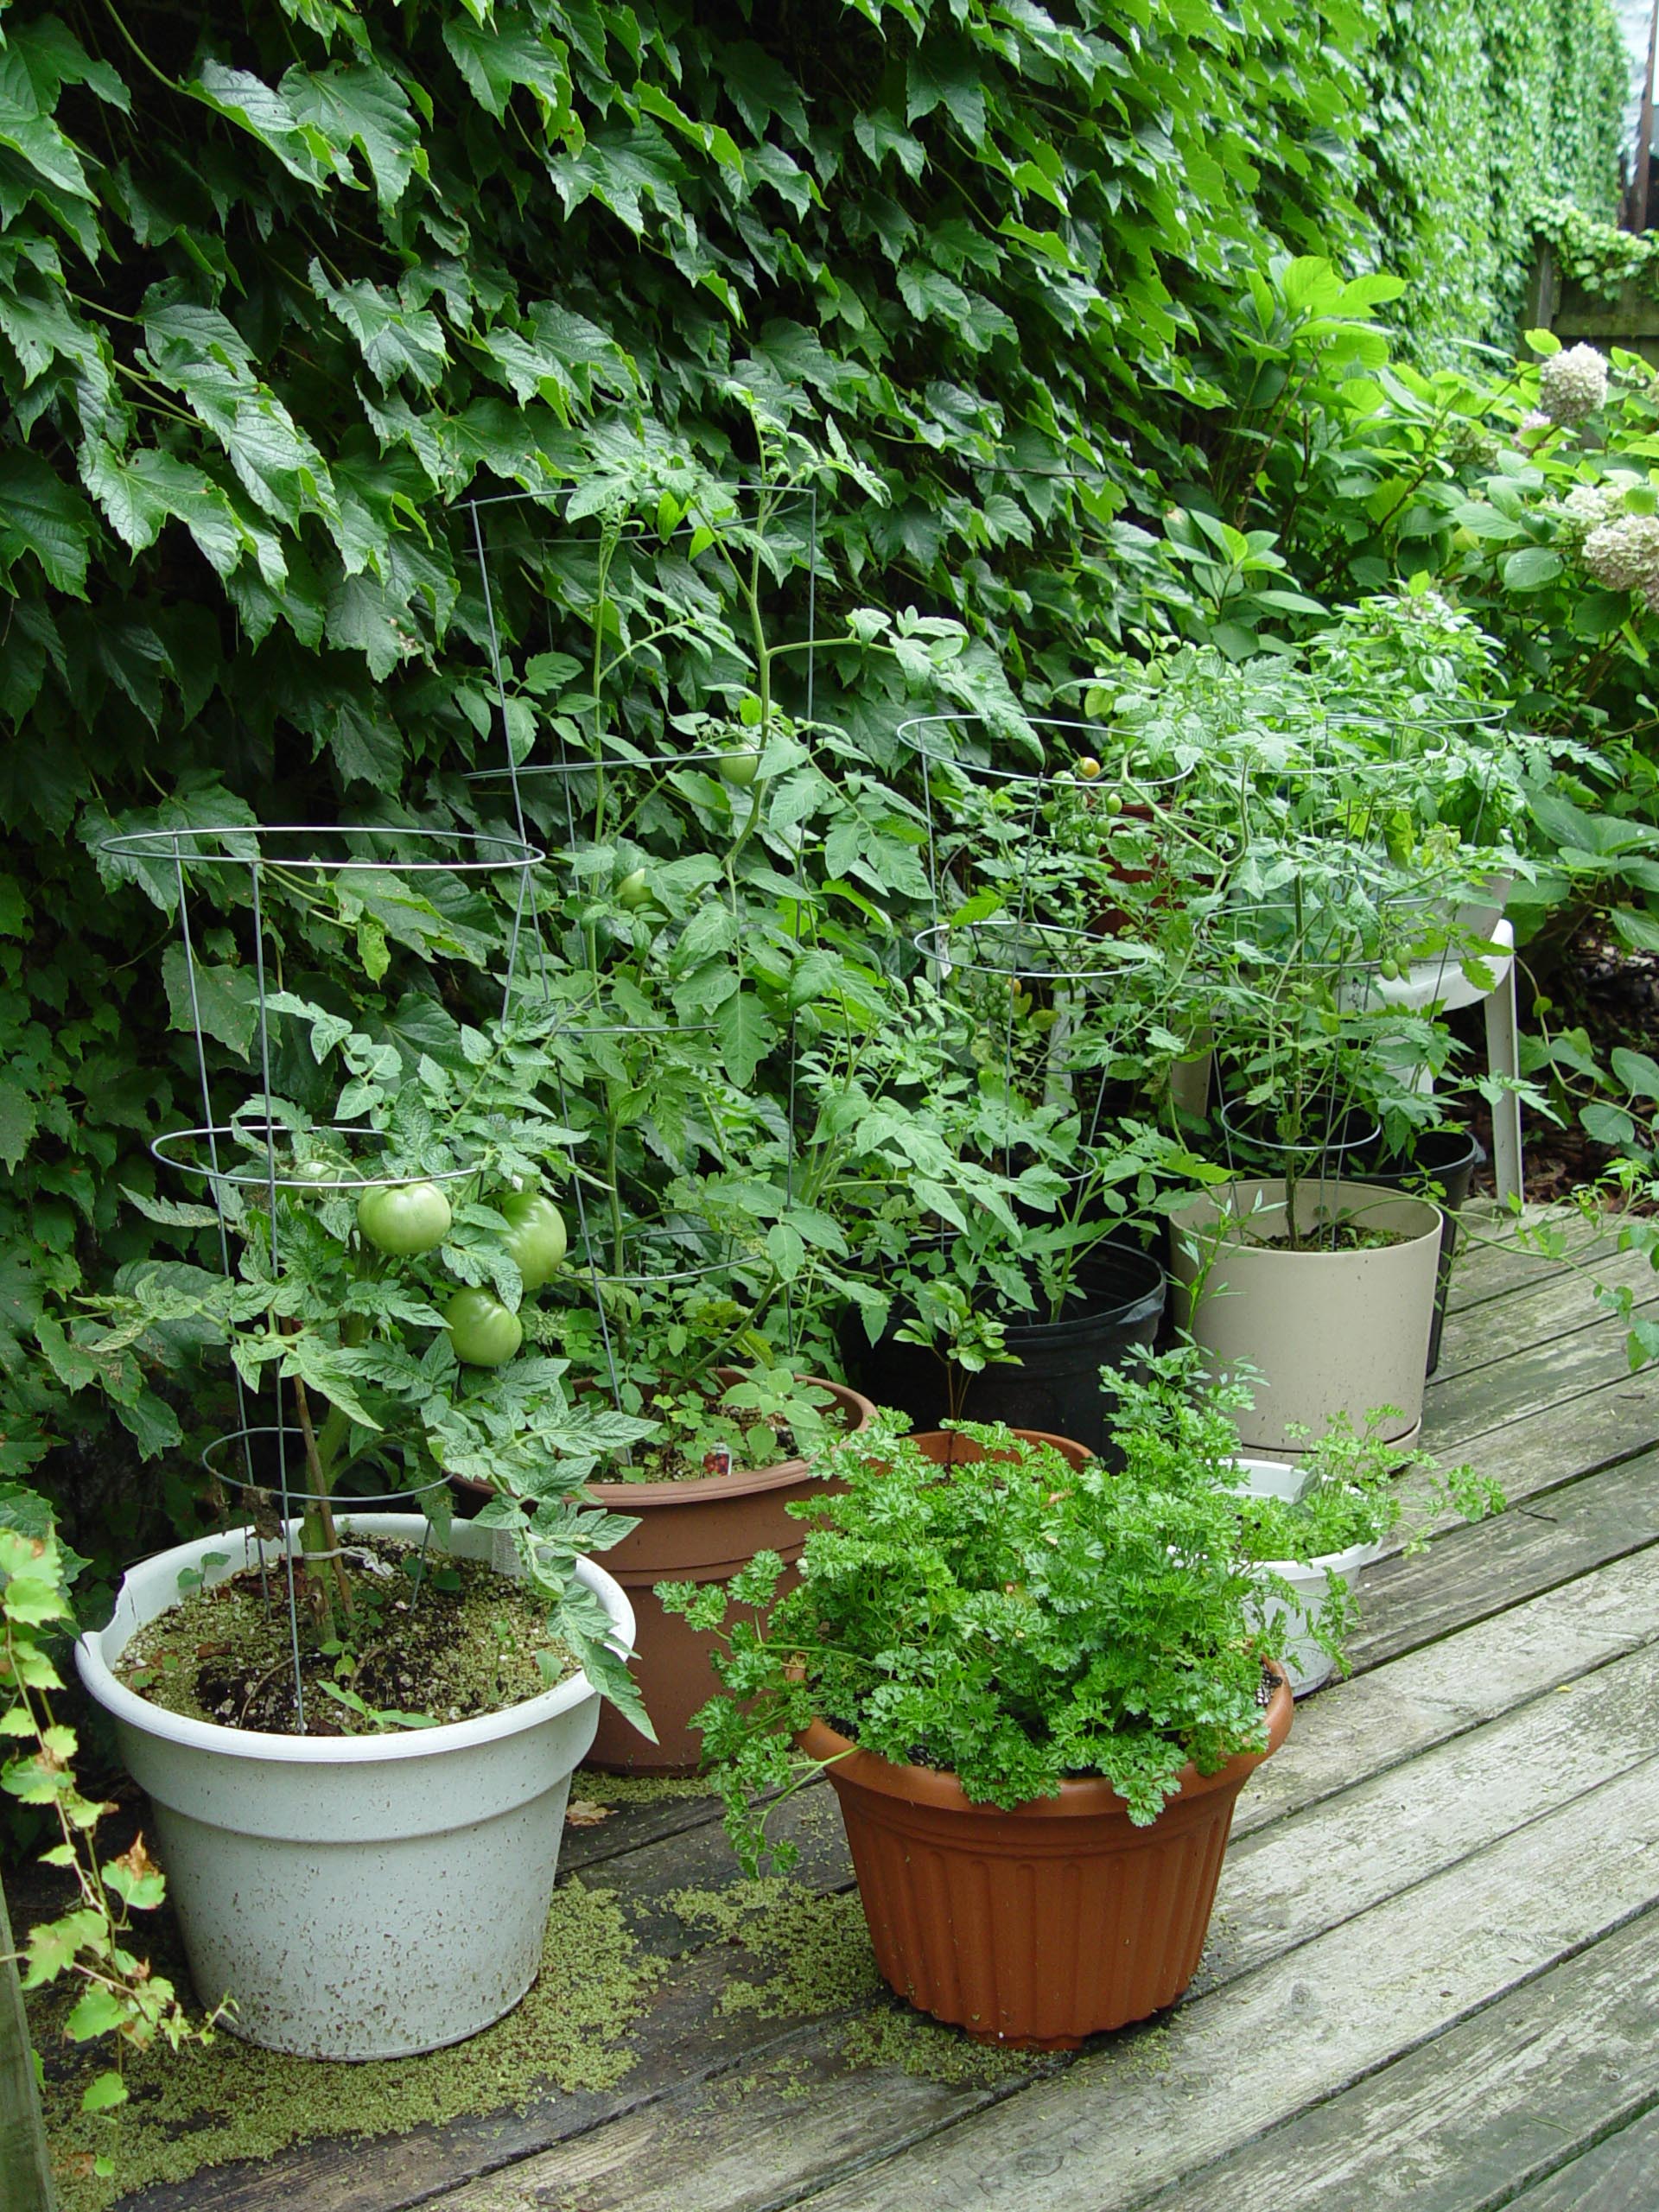 Veggie-Gardening without the Garden | Garden Housecalls
